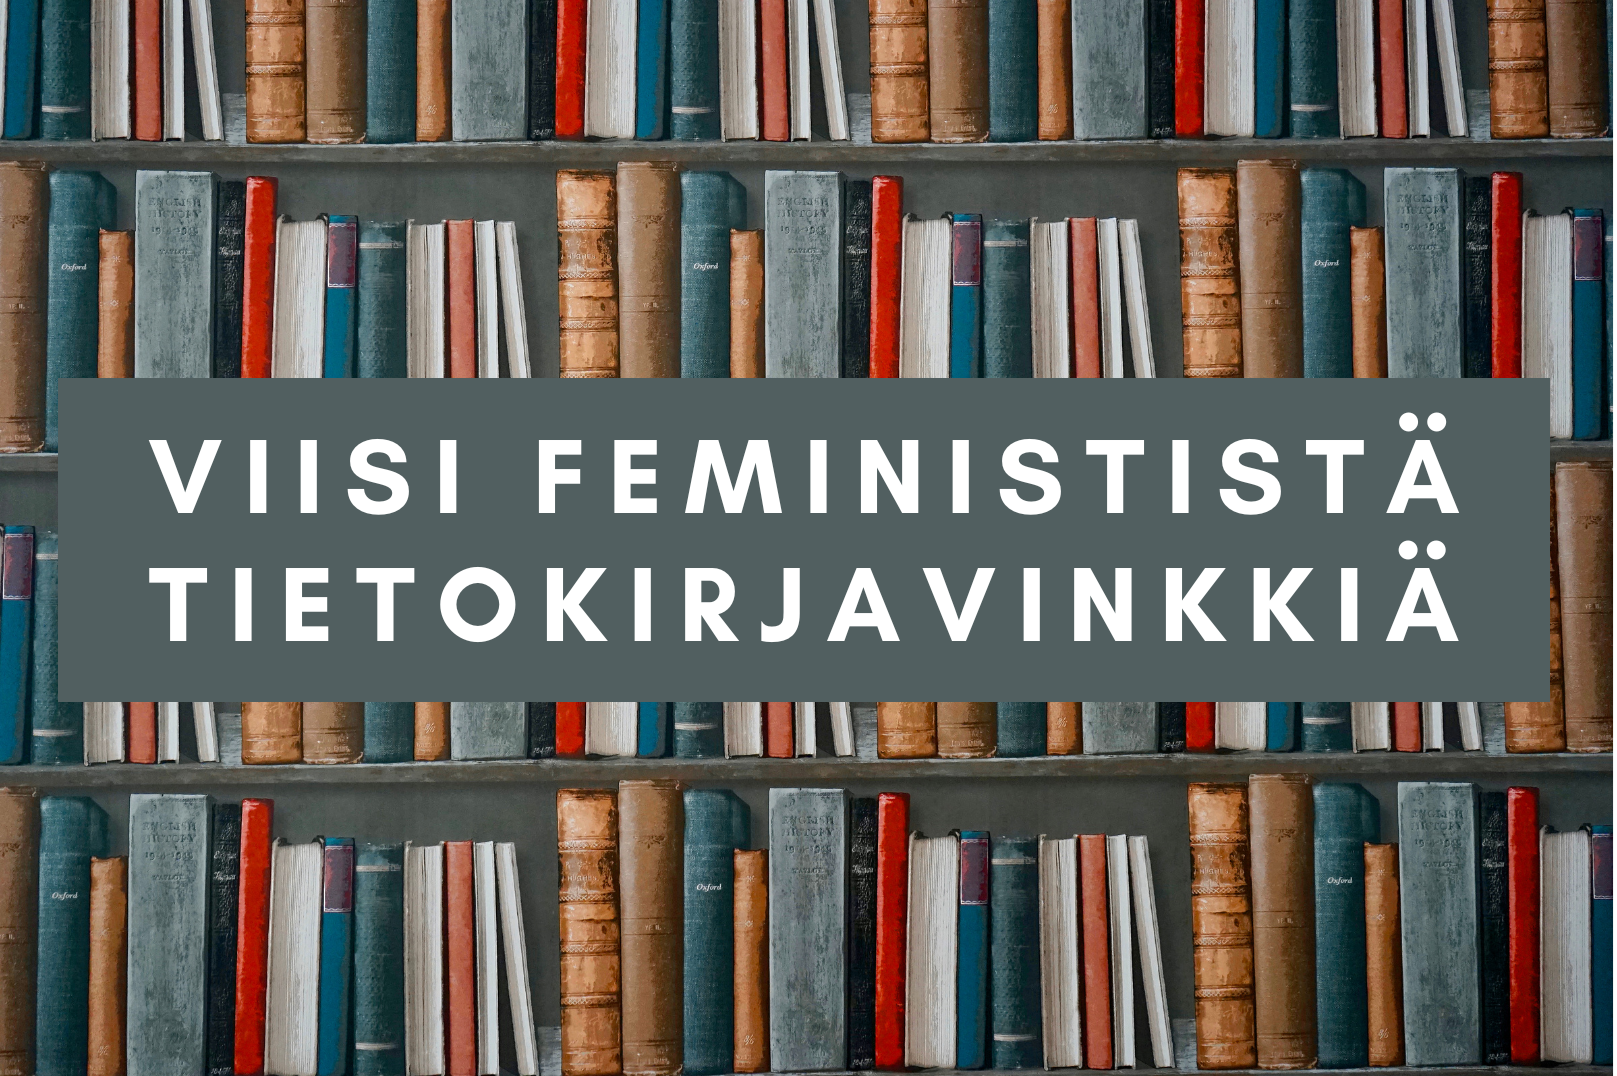 Viisi feminististä tietokirjavinkkiä